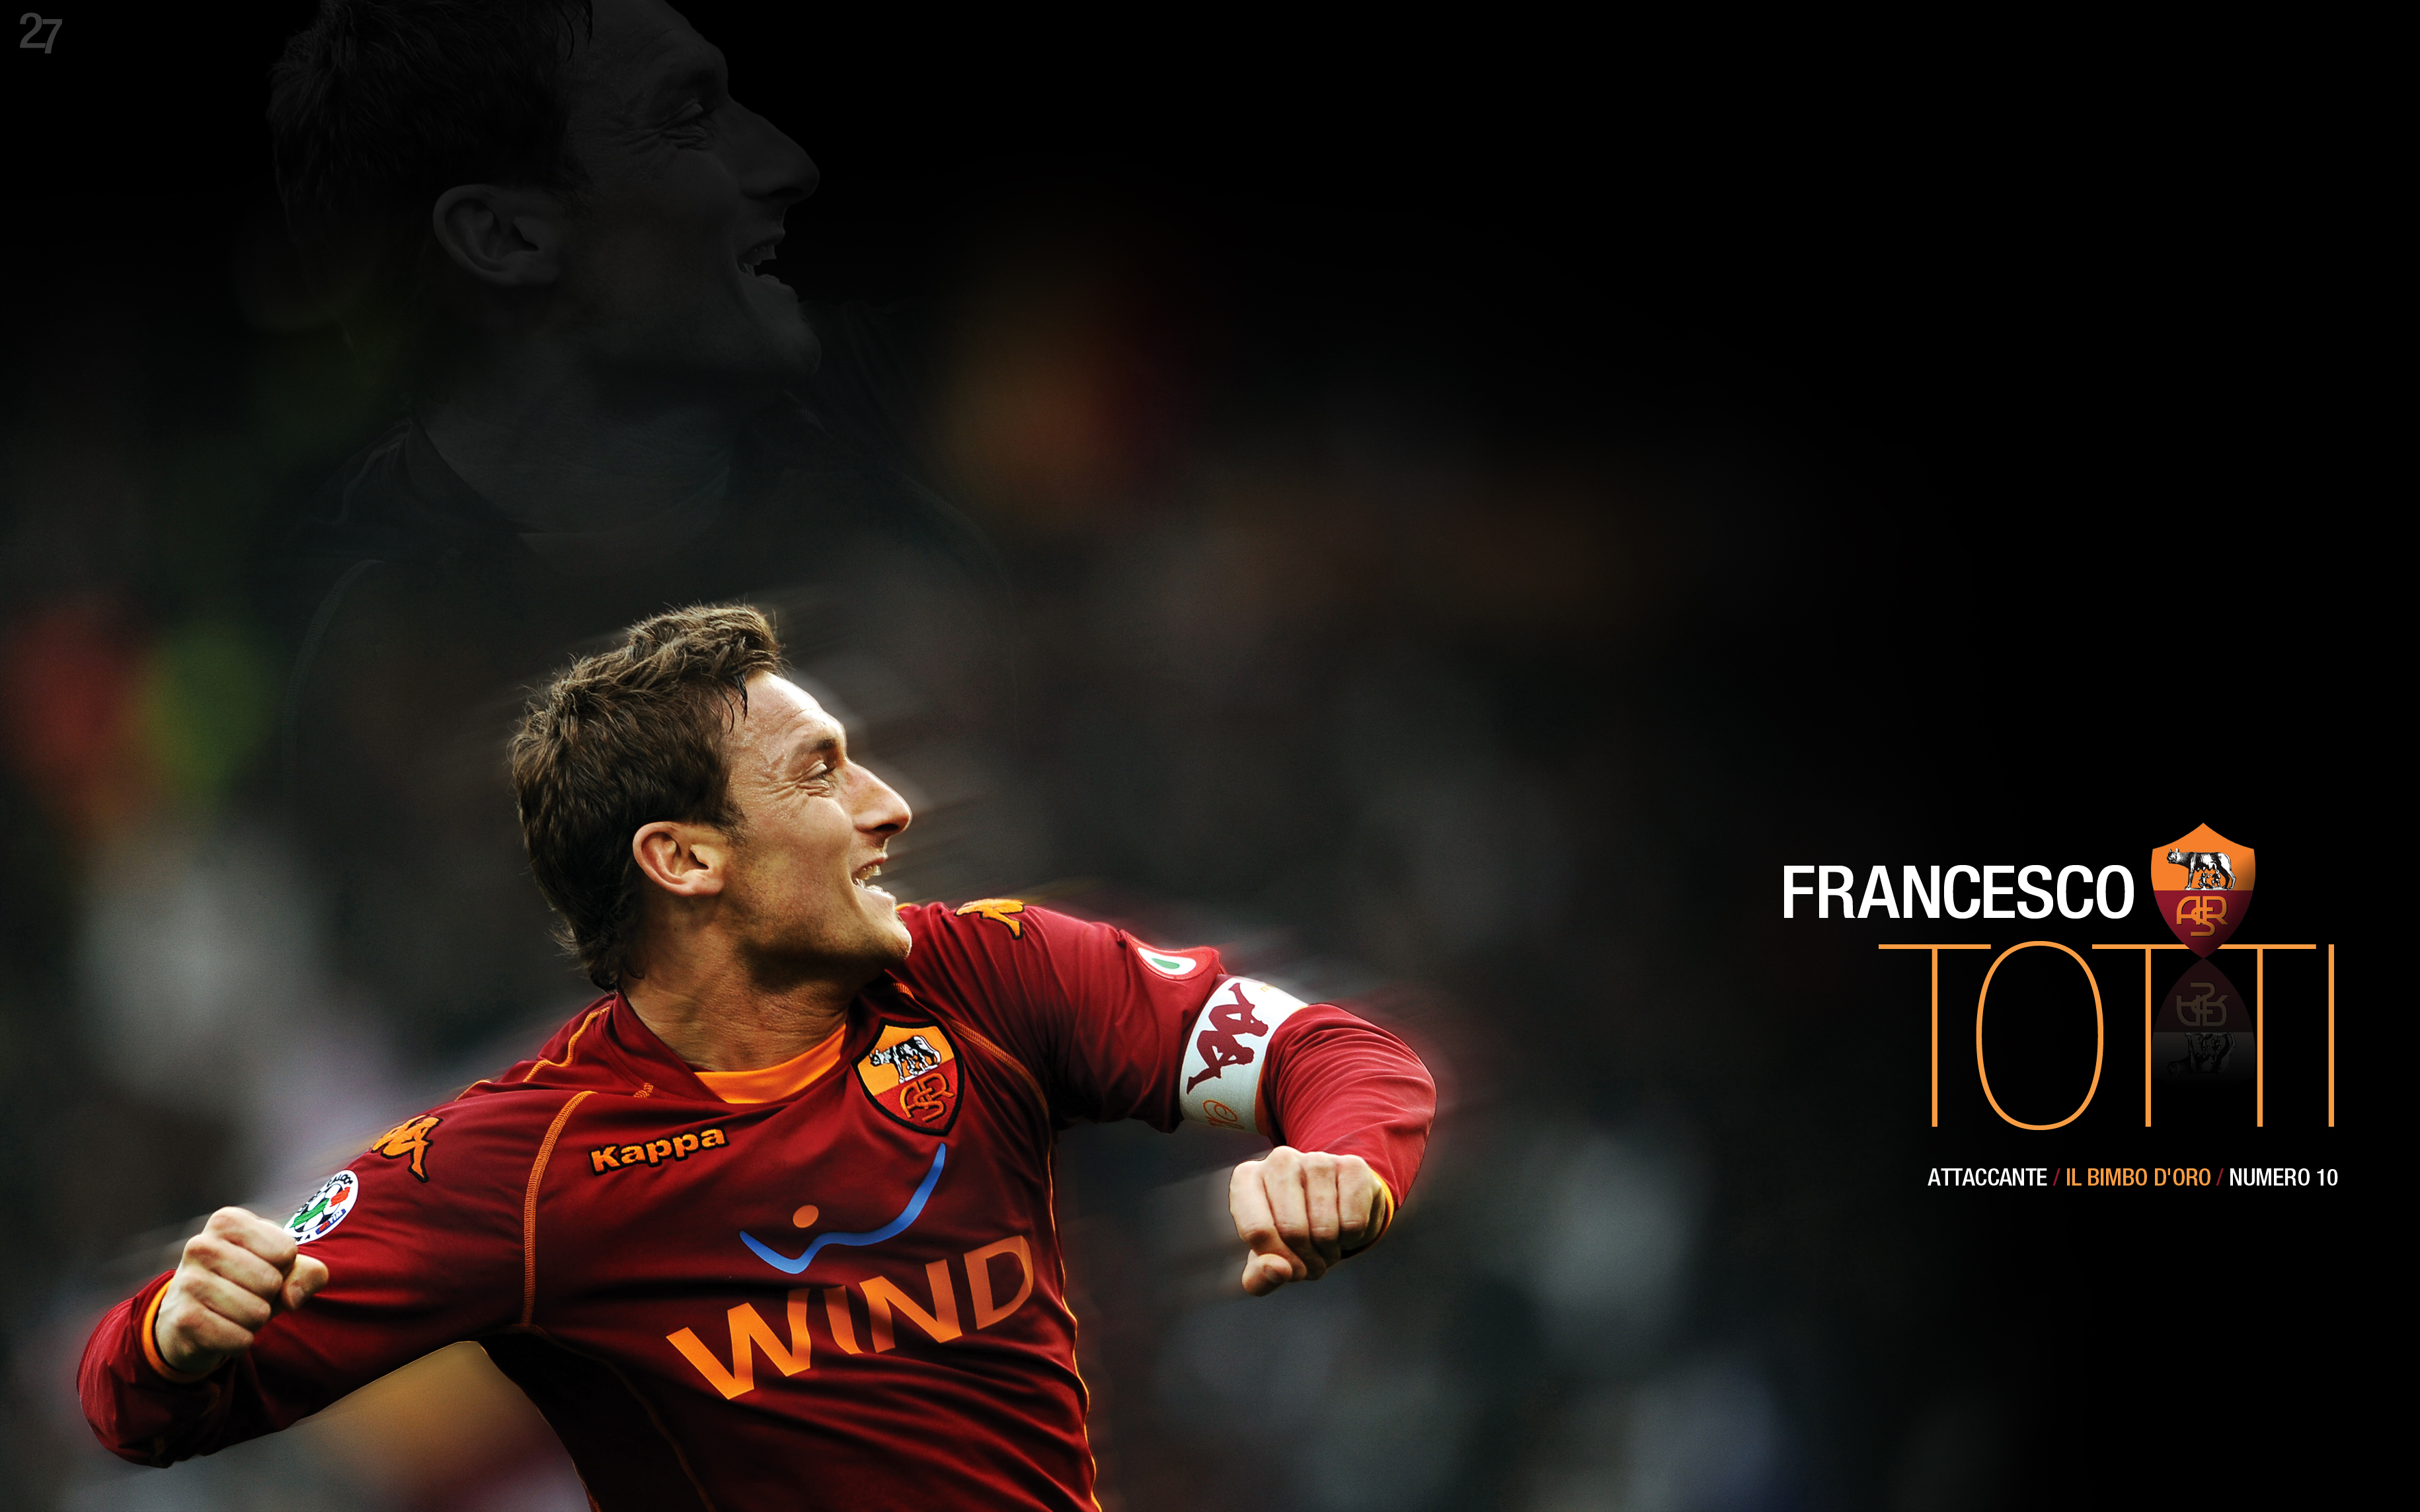 Los mejores fondos de pantalla de Francesco Totti para la pantalla del teléfono